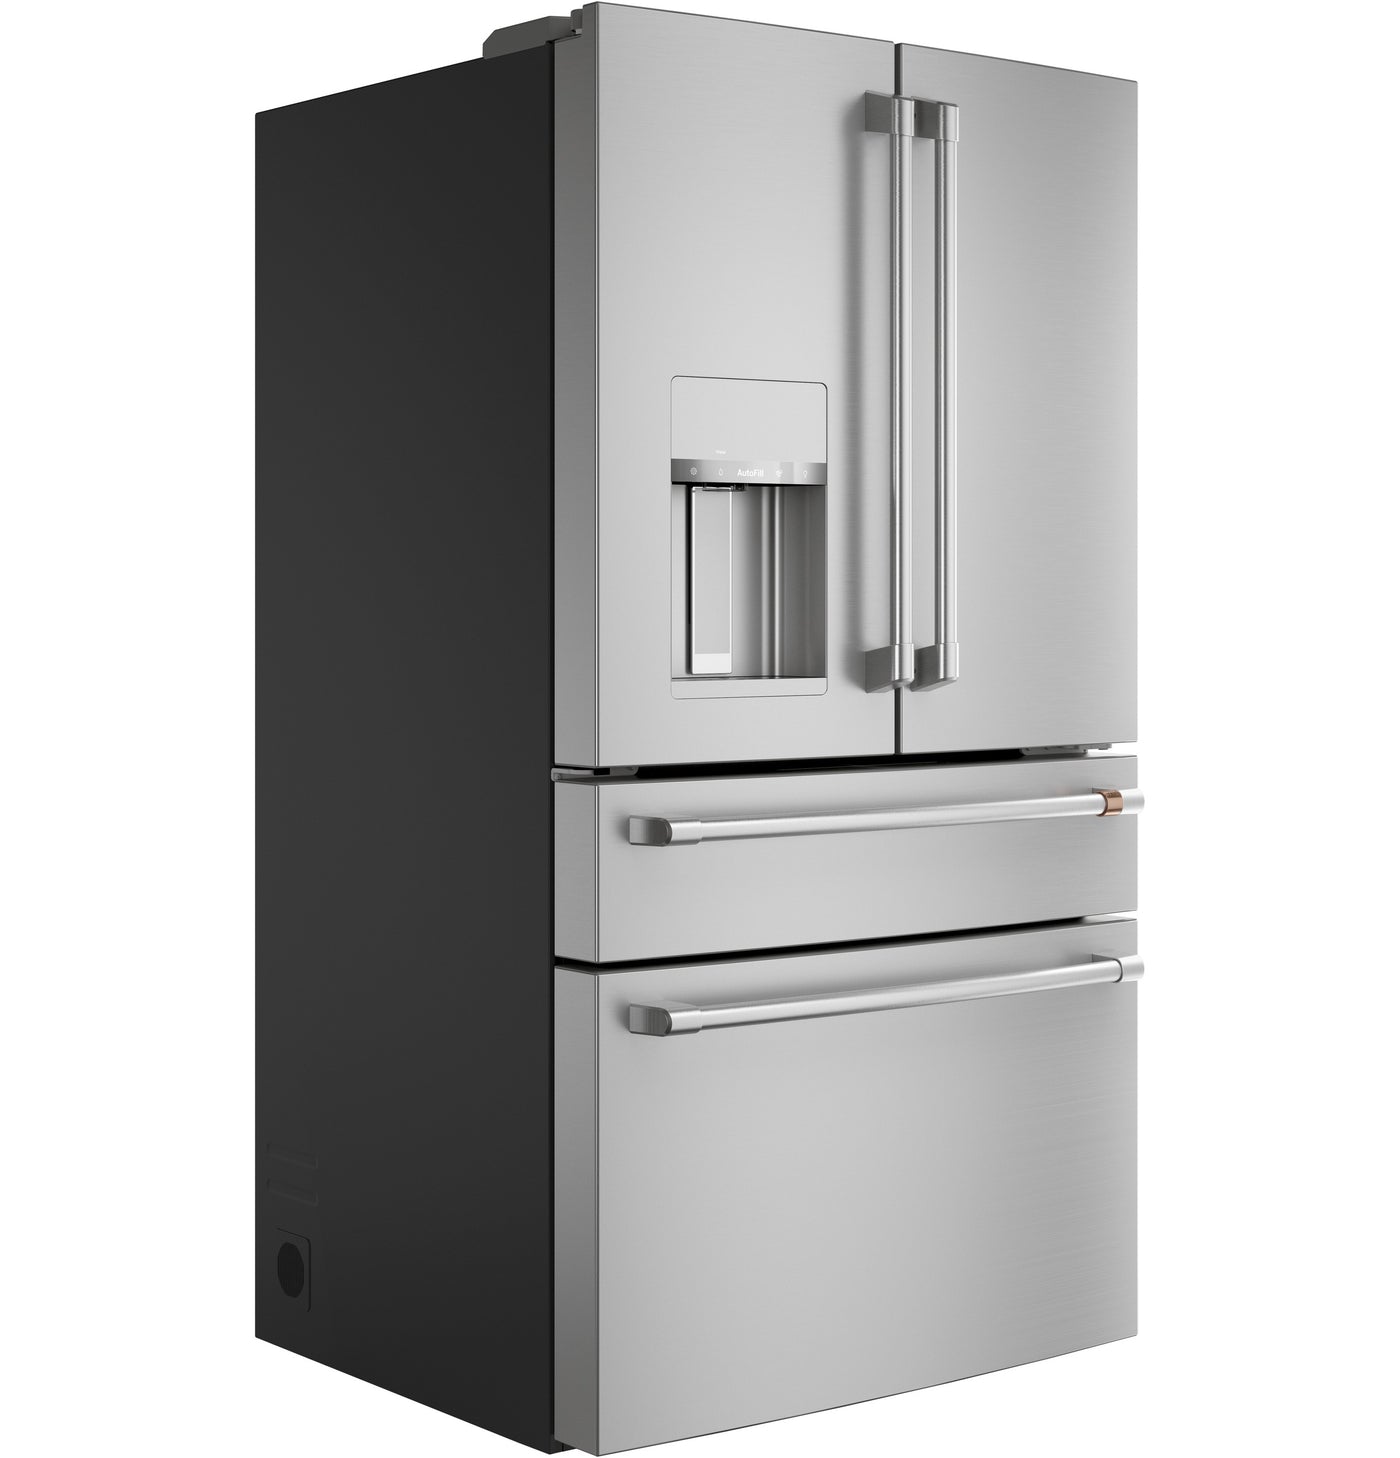 Café Stainless Steel 36" 4-Door French-Door Refrigerator (27.8 Cu. Ft.) - CVE28DP2NS1